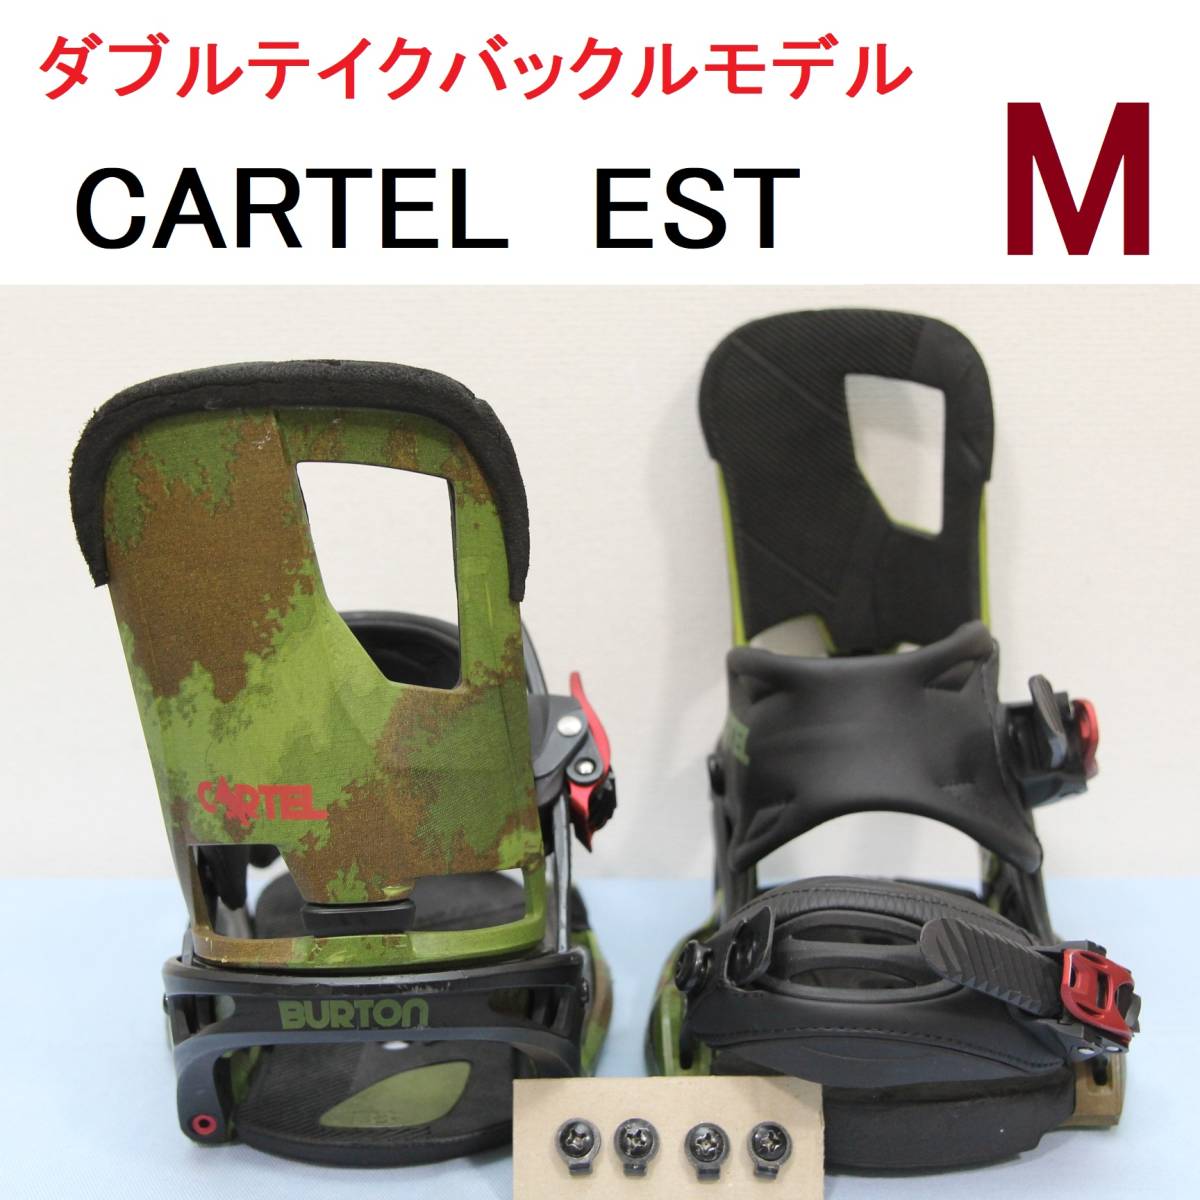 日本購入サイト 【M】CARTEL カーテル EST バートン DT BURTON メンズ 